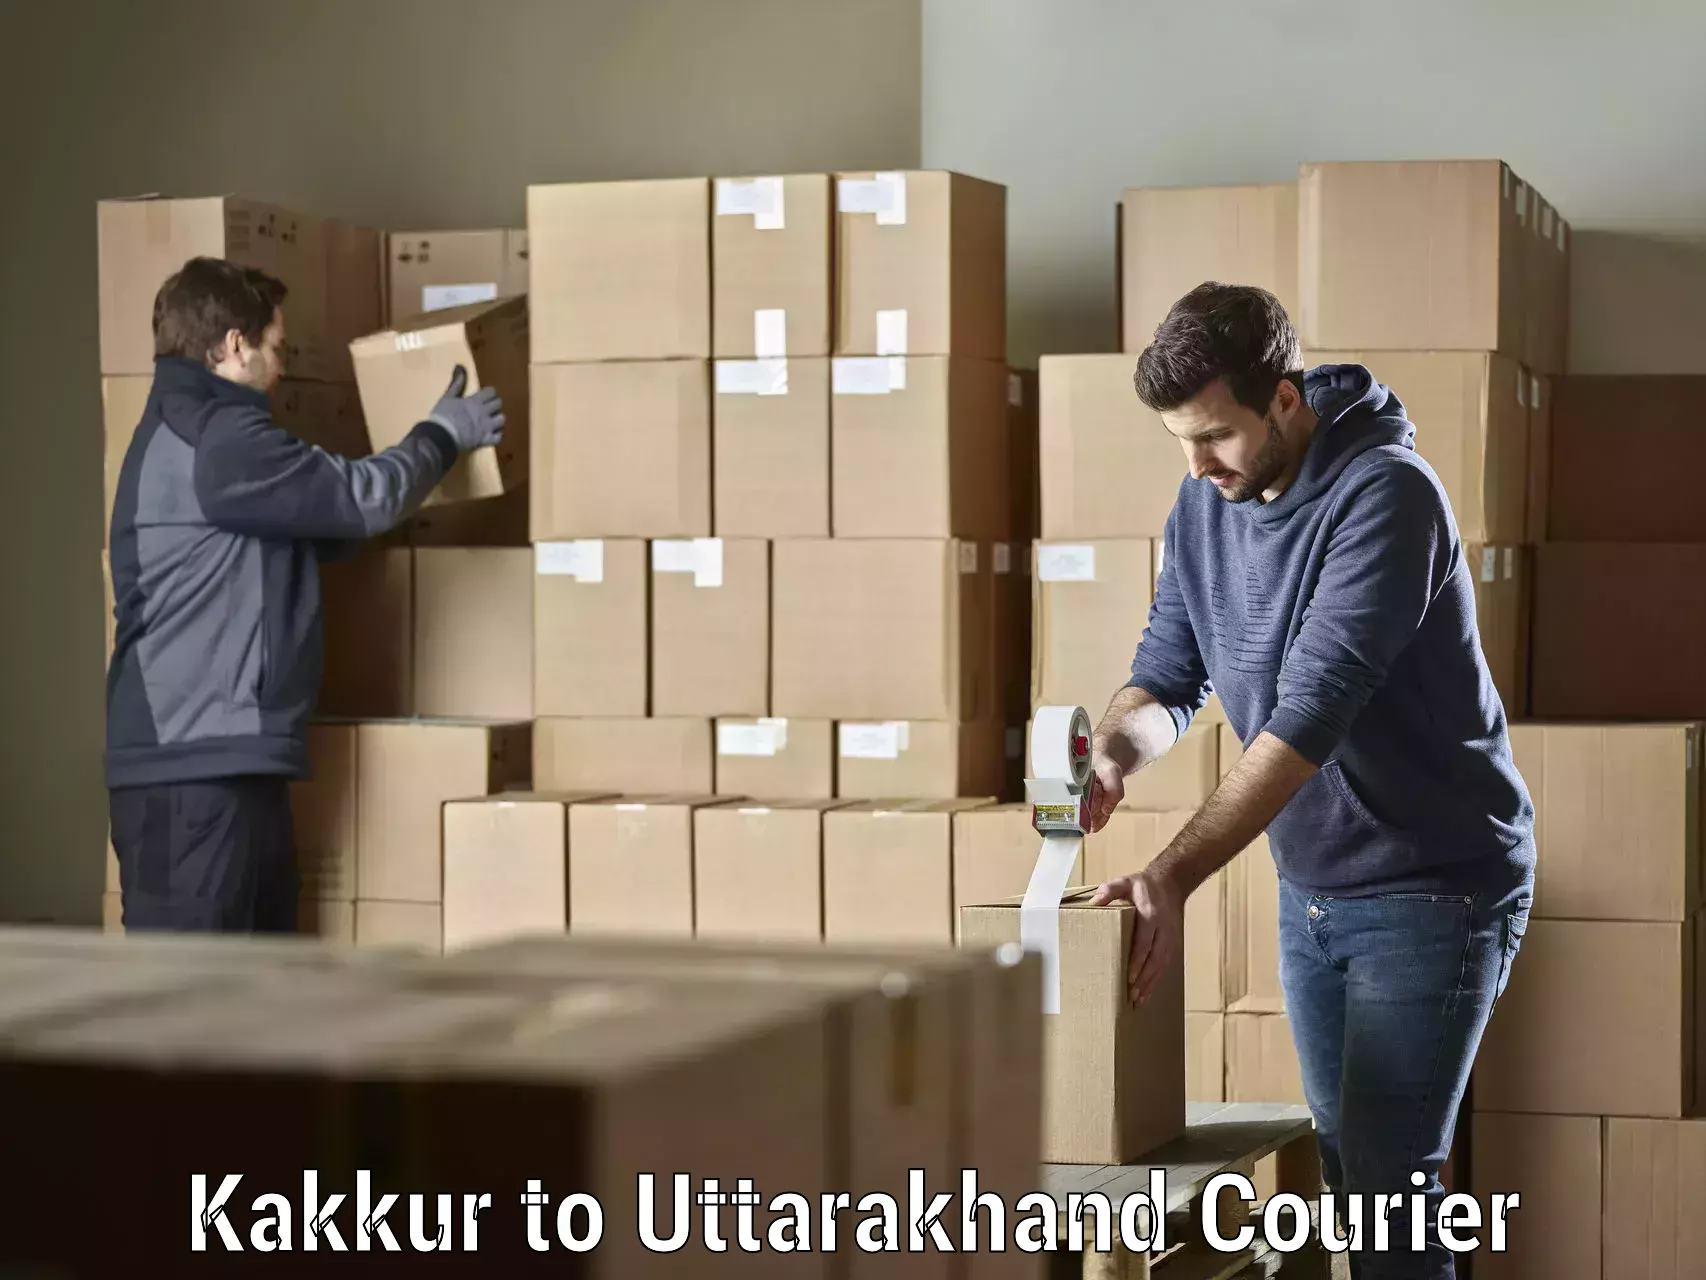 High-speed parcel service Kakkur to Dehradun